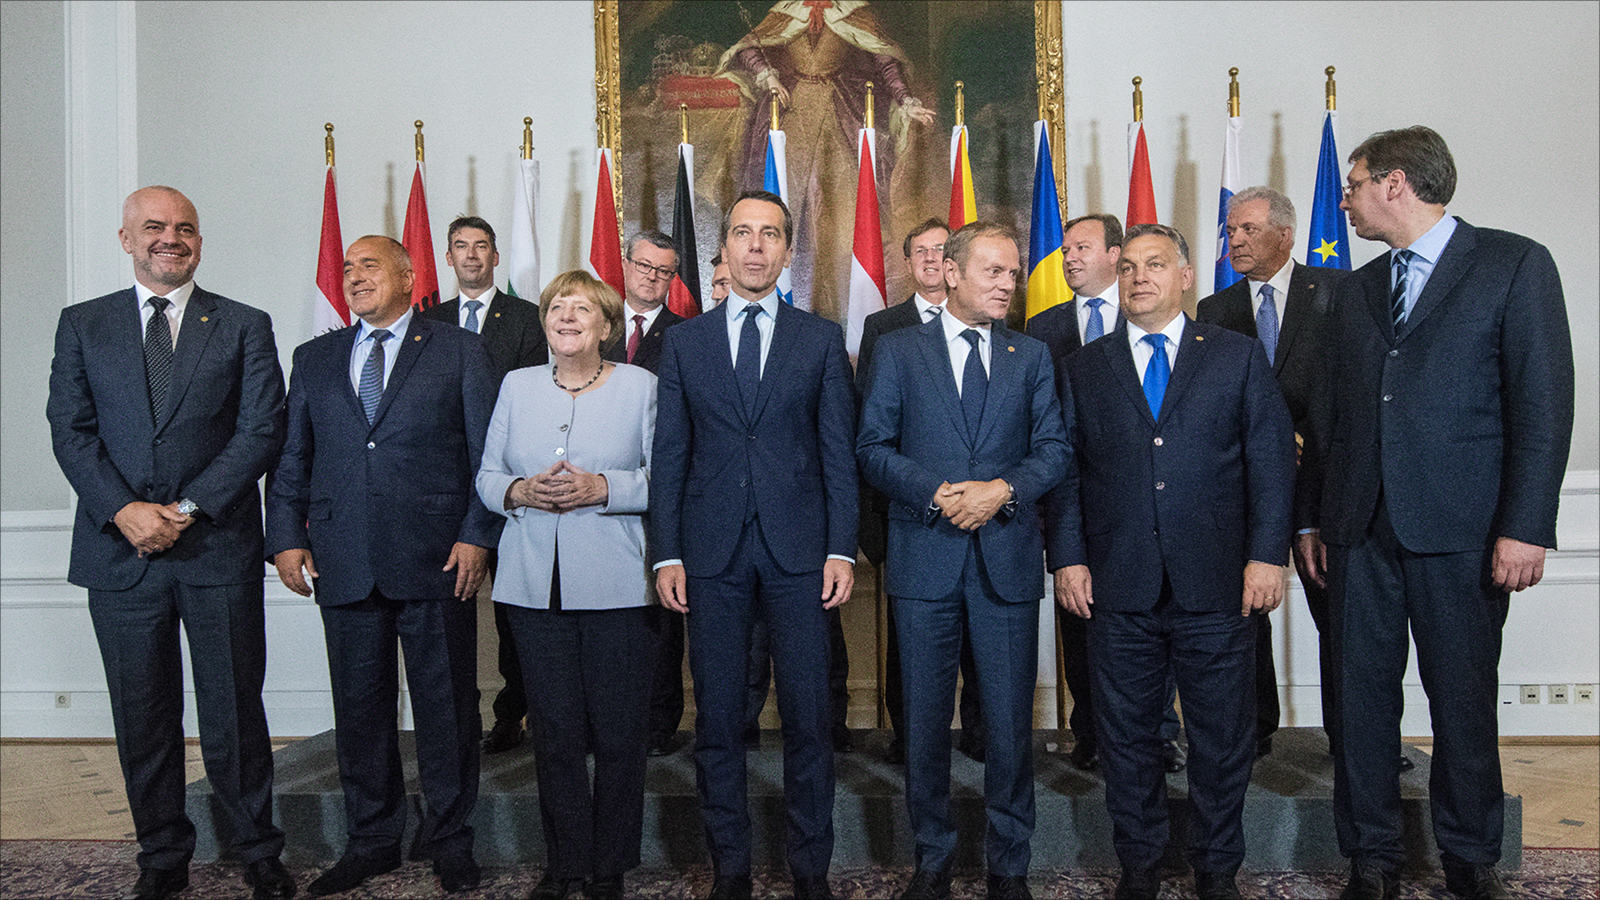 ‪القادة الأوروبيون يسعون للتأكيد على أن طريق البلقان مغلقة أمام اللاجئين‬ (الأوروبية)